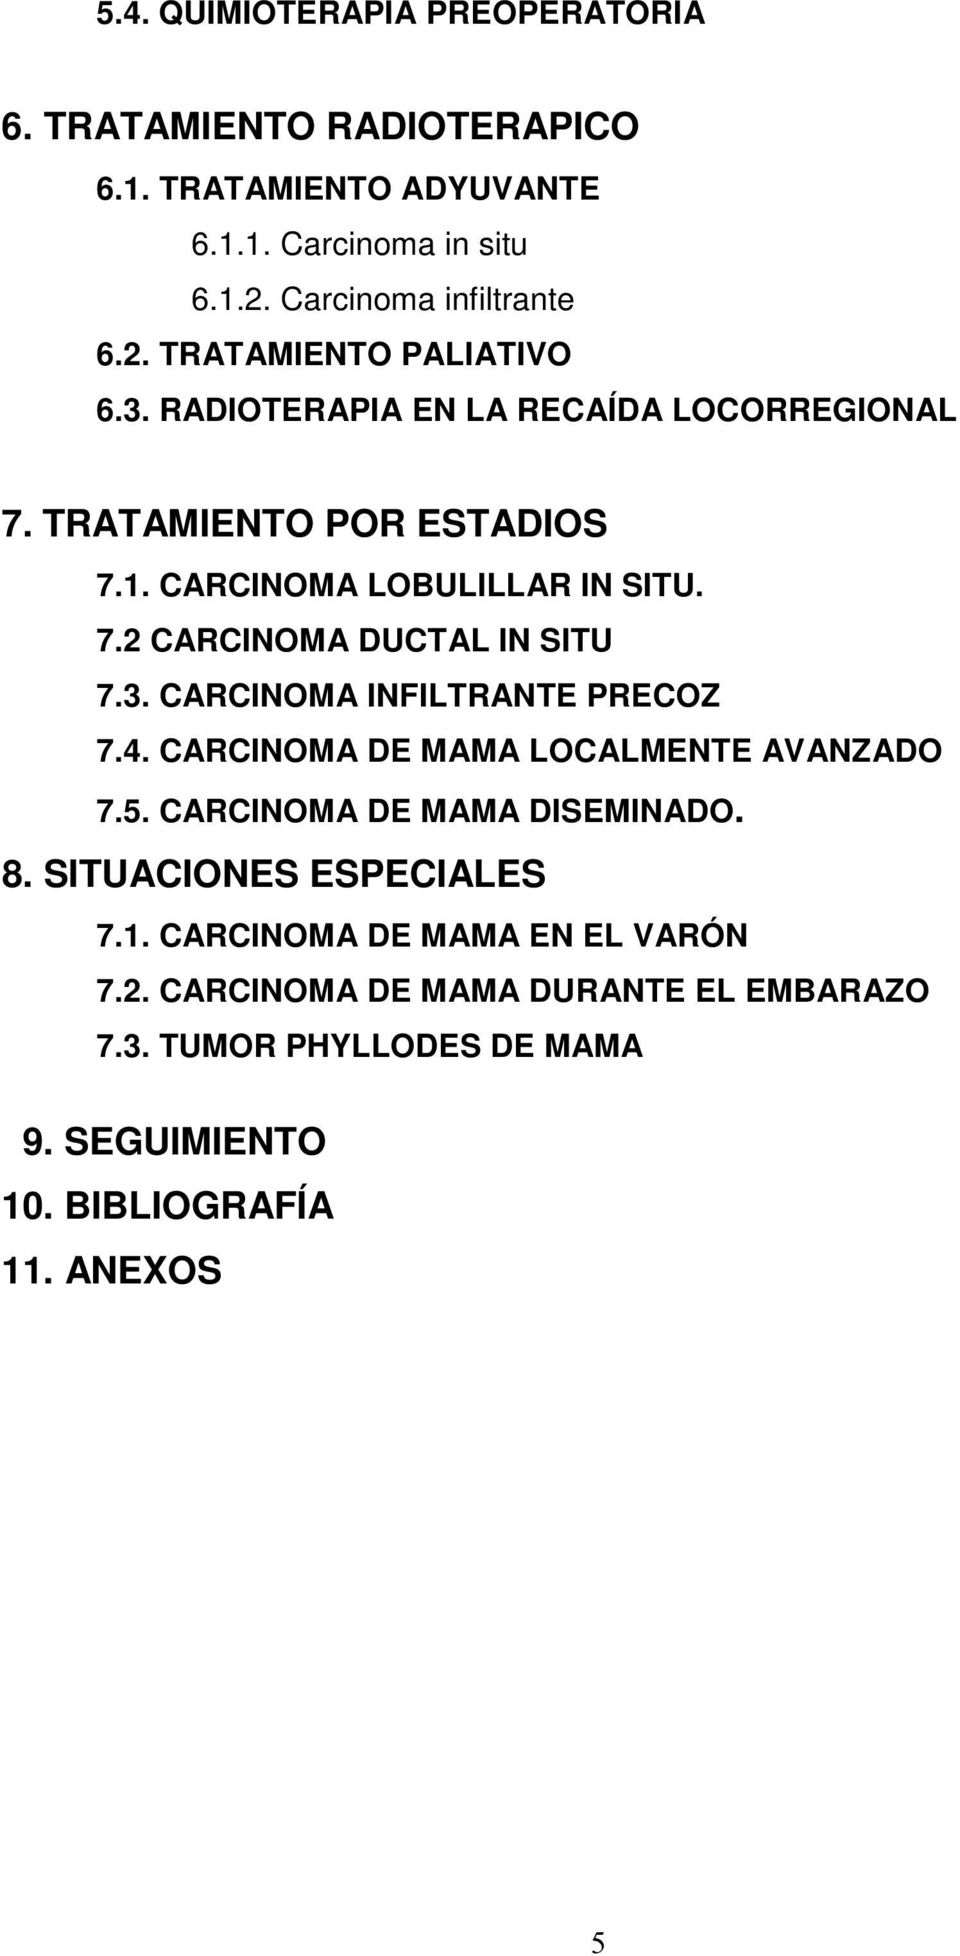 4. CARCINOMA DE MAMA LOCALMENTE AVANZADO 7.5. CARCINOMA DE MAMA DISEMINADO. 8. SITUACIONES ESPECIALES 7.1. CARCINOMA DE MAMA EN EL VARÓN 7.2.